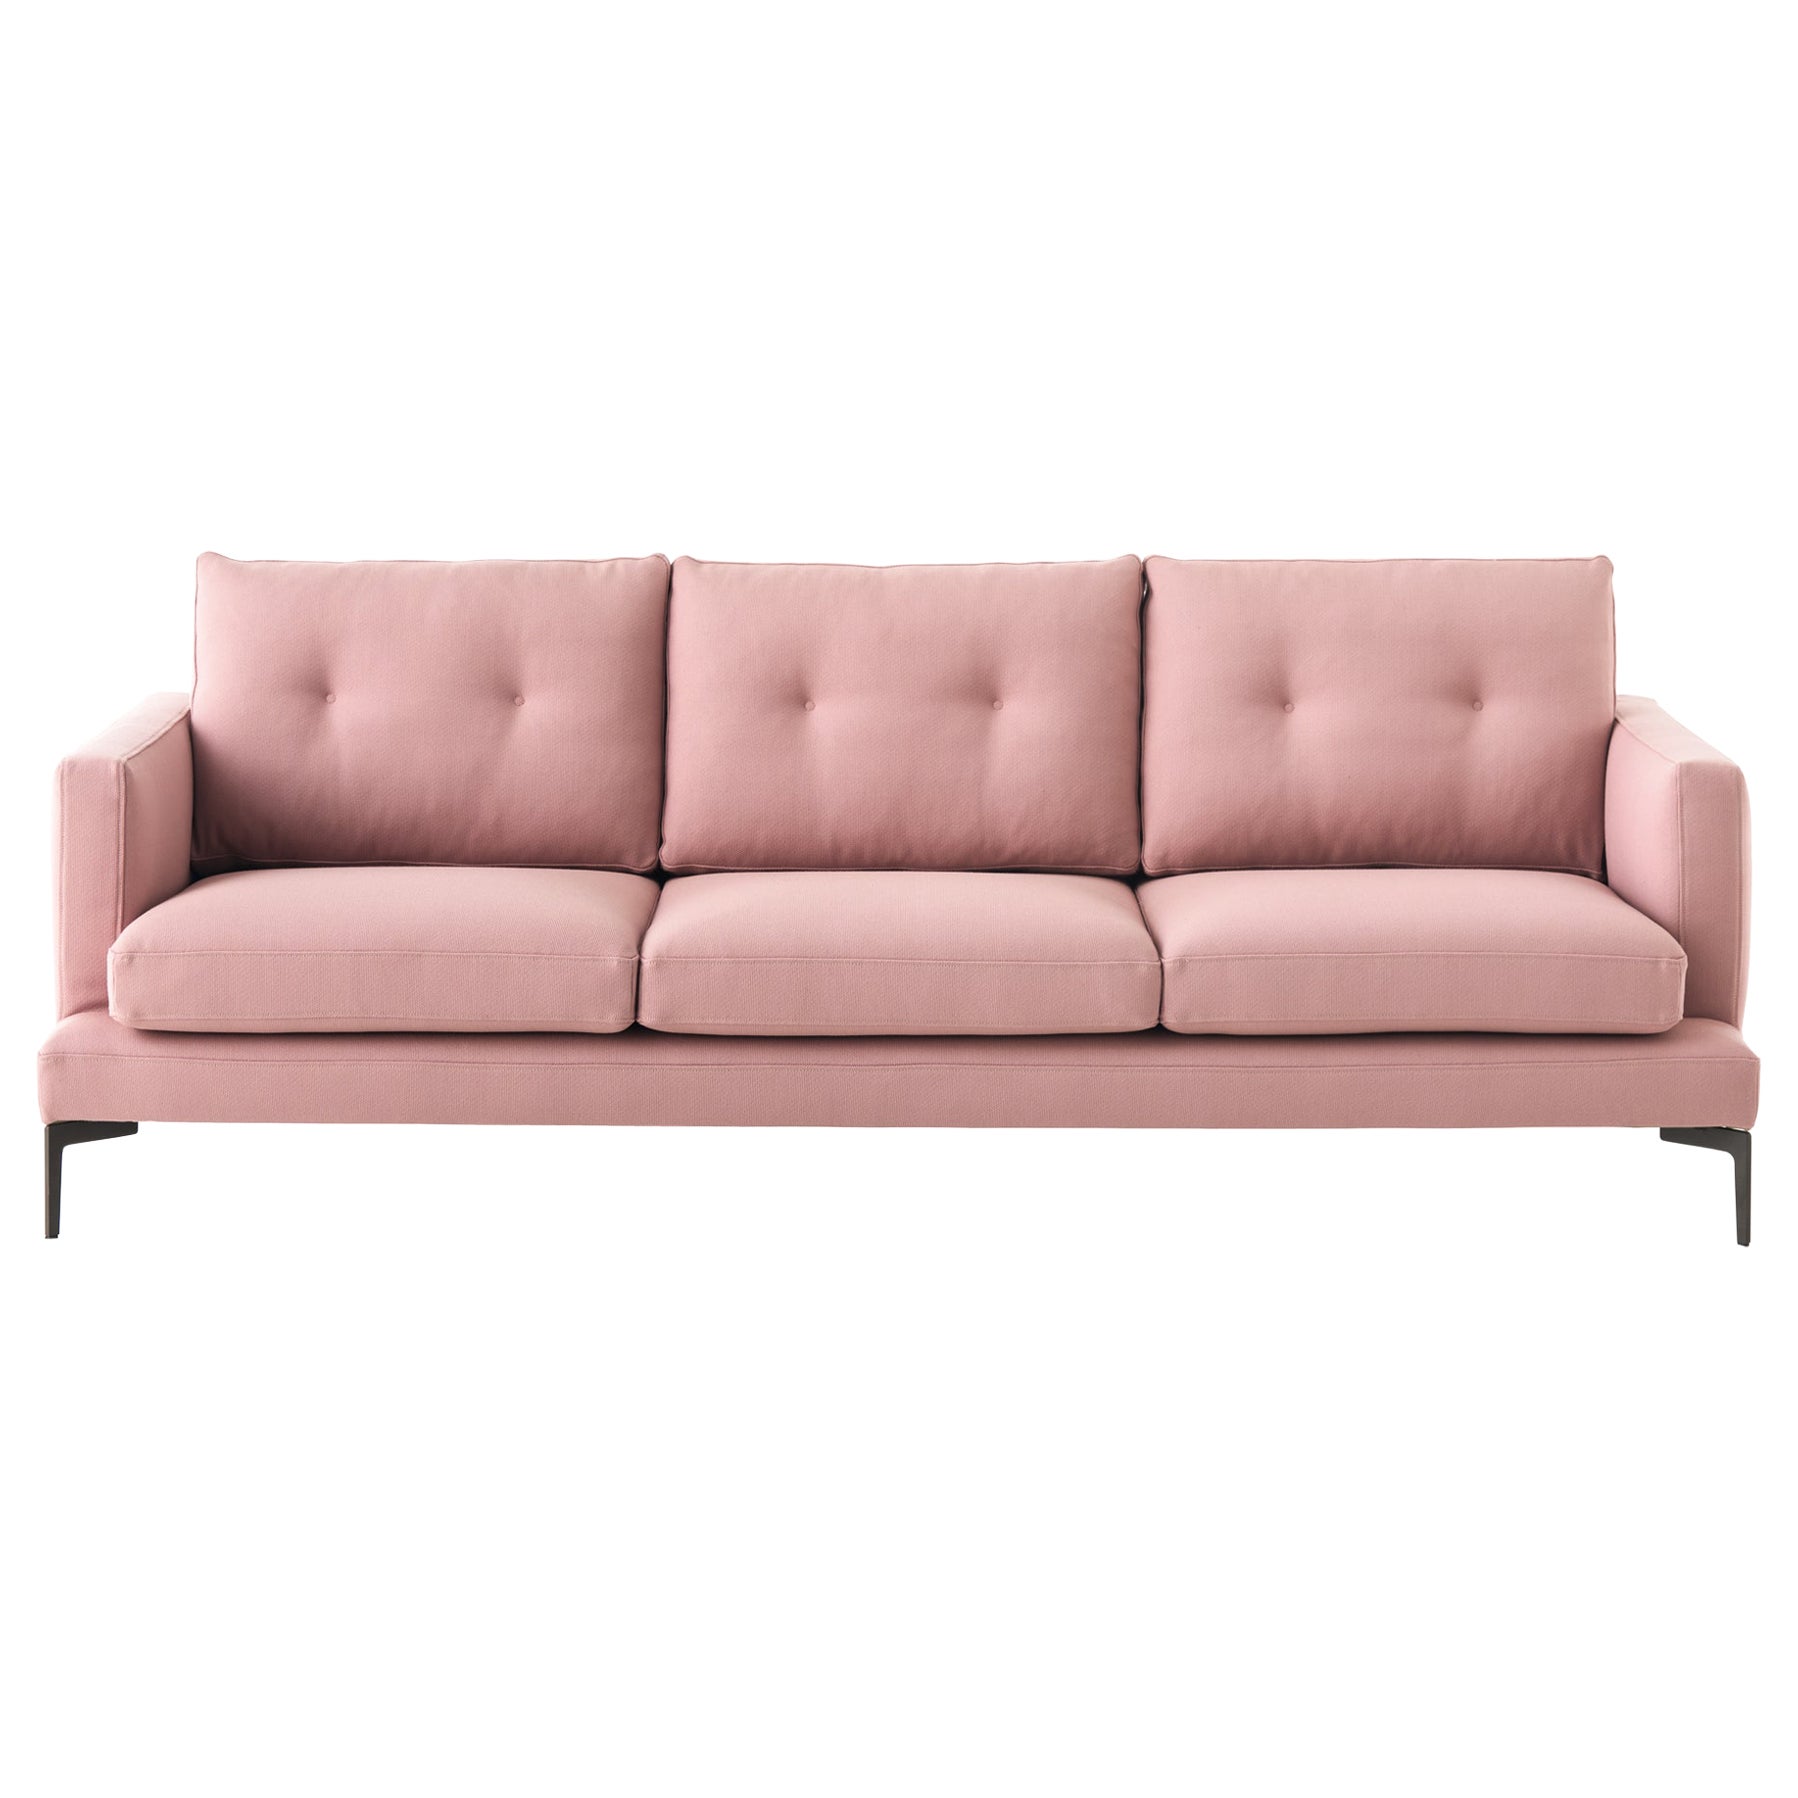 3-Sitzer-Sofa 250 mit rosa geflochtener Polsterung und grauen Beinen, Sergio Bicego